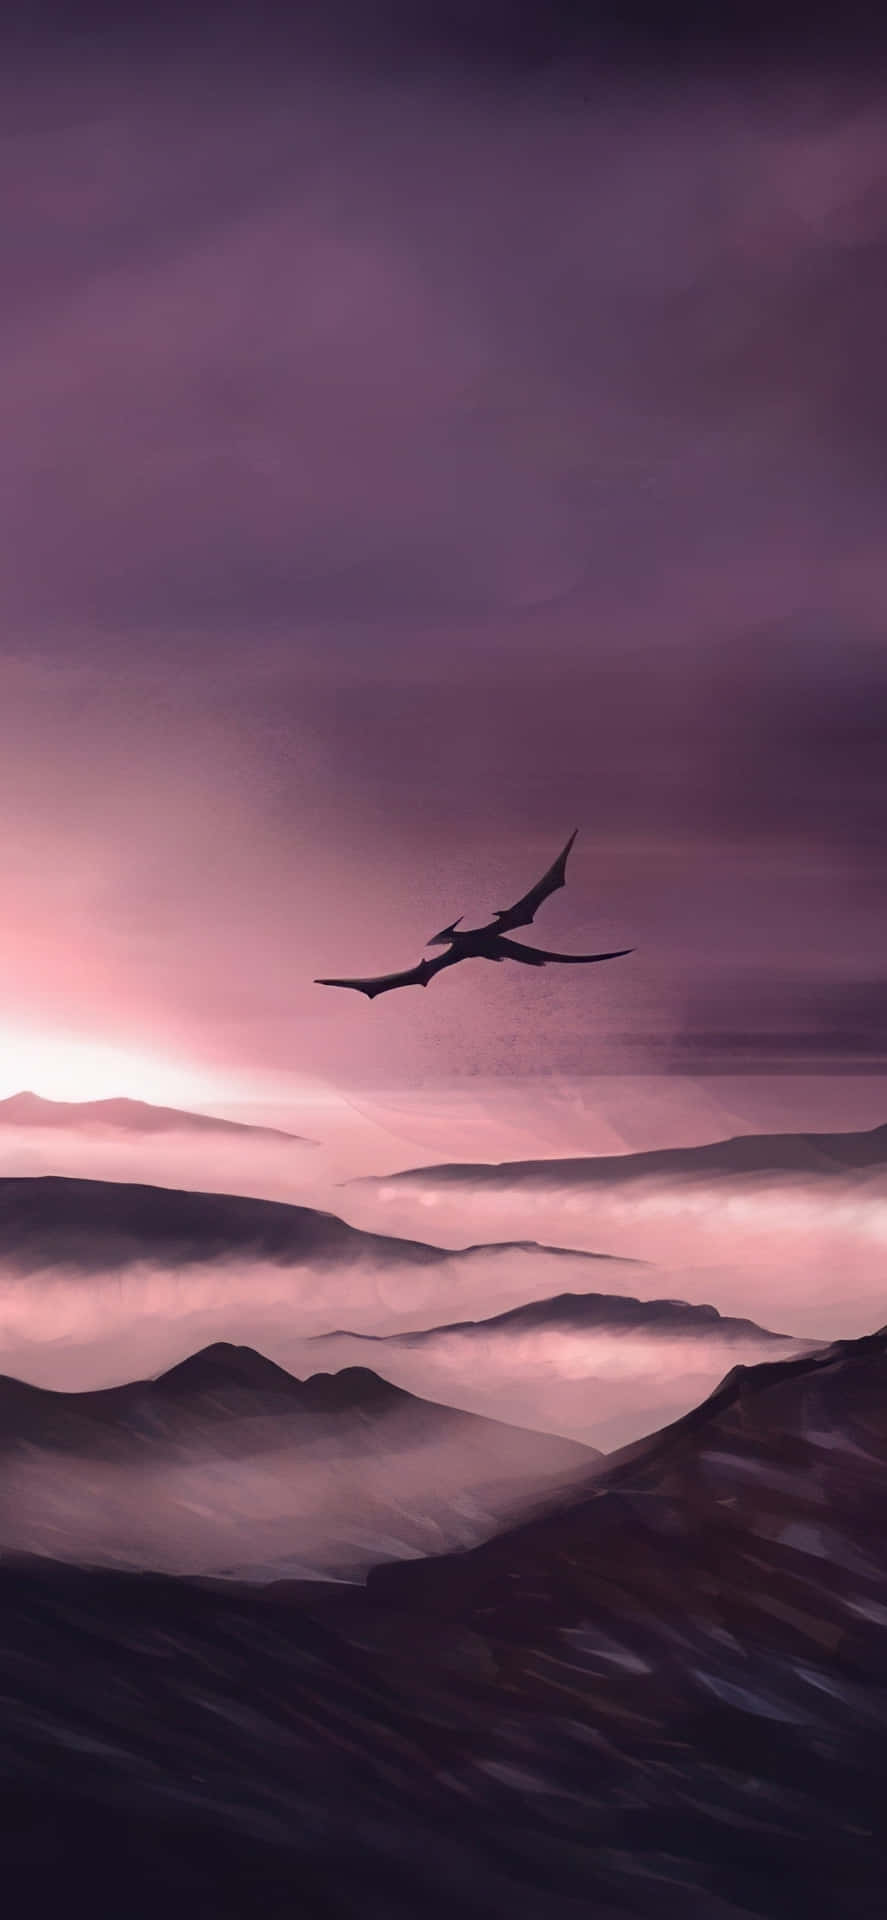 Mystic_ Dragon_ Flight_at_ Dusk Wallpaper